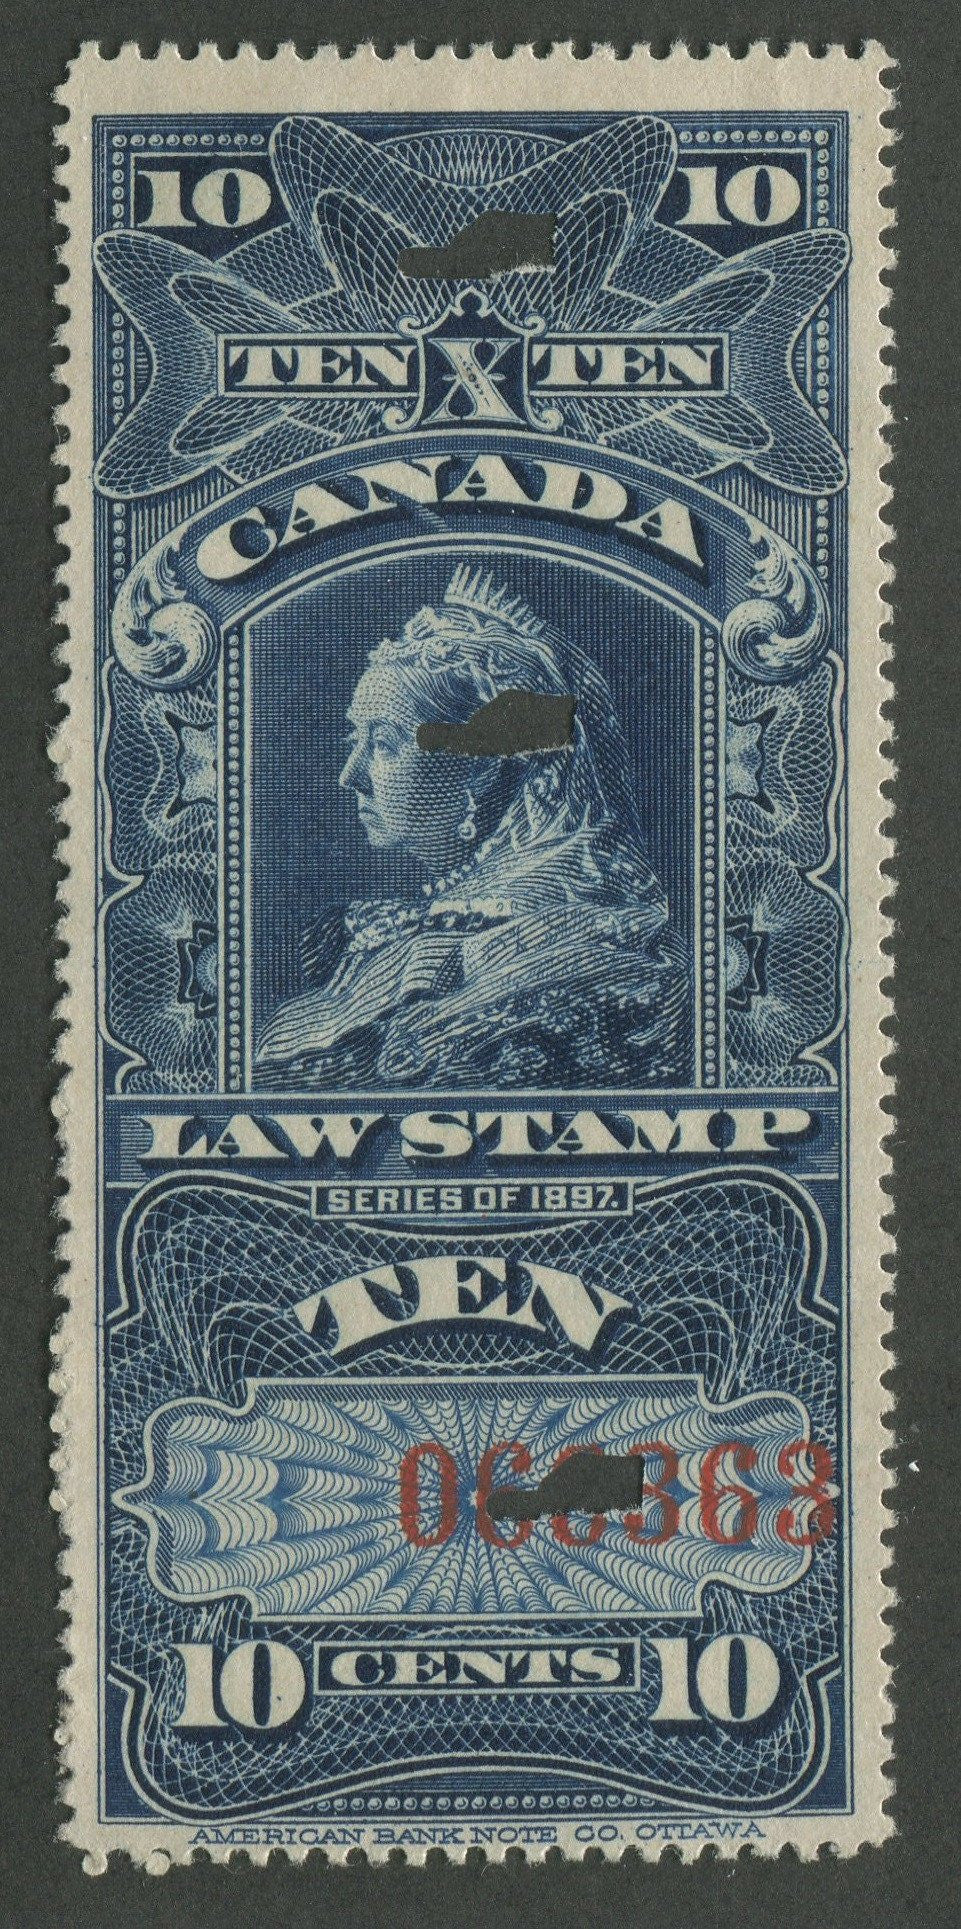 0007SC1707 - FSC7 - Used - Deveney Stamps Ltd. Canadian Stamps